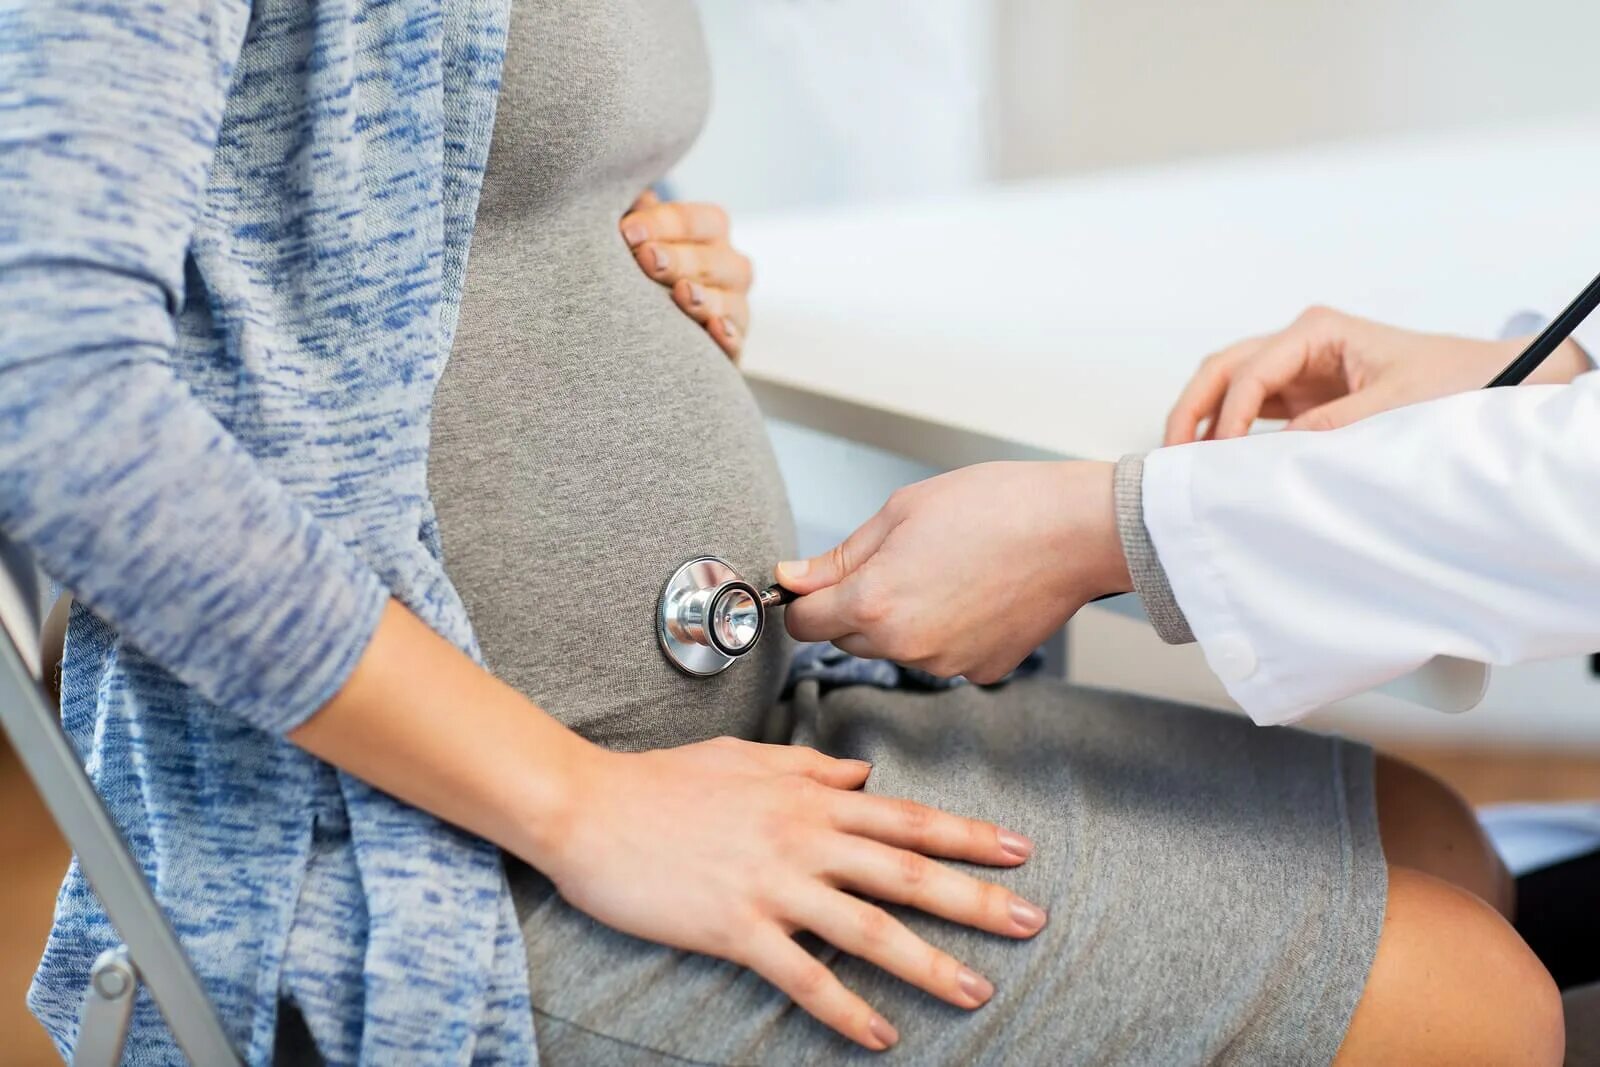 Стетоскоп беременность. Середина беременности. Сопровождения беременной женщины в Германии. Беременность и ССЗ фото. Гинеколог помогает забеременеть